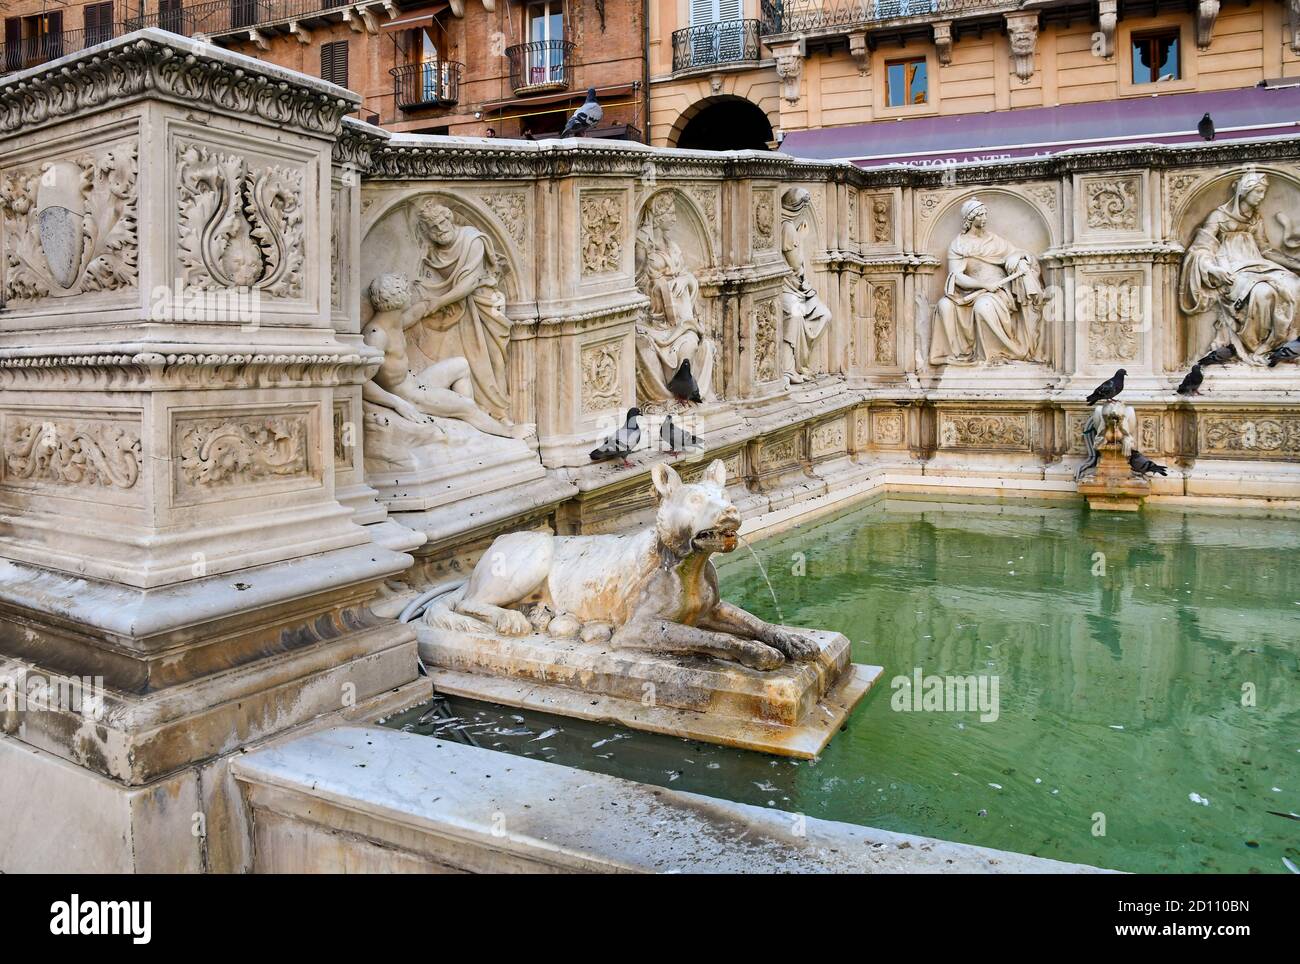 Particolare della Fonte Gaia, una fontana monumentale in Piazza del campo nel centro di Siena, patrimonio dell'umanità dell'UNESCO, Toscana, Italia Foto Stock